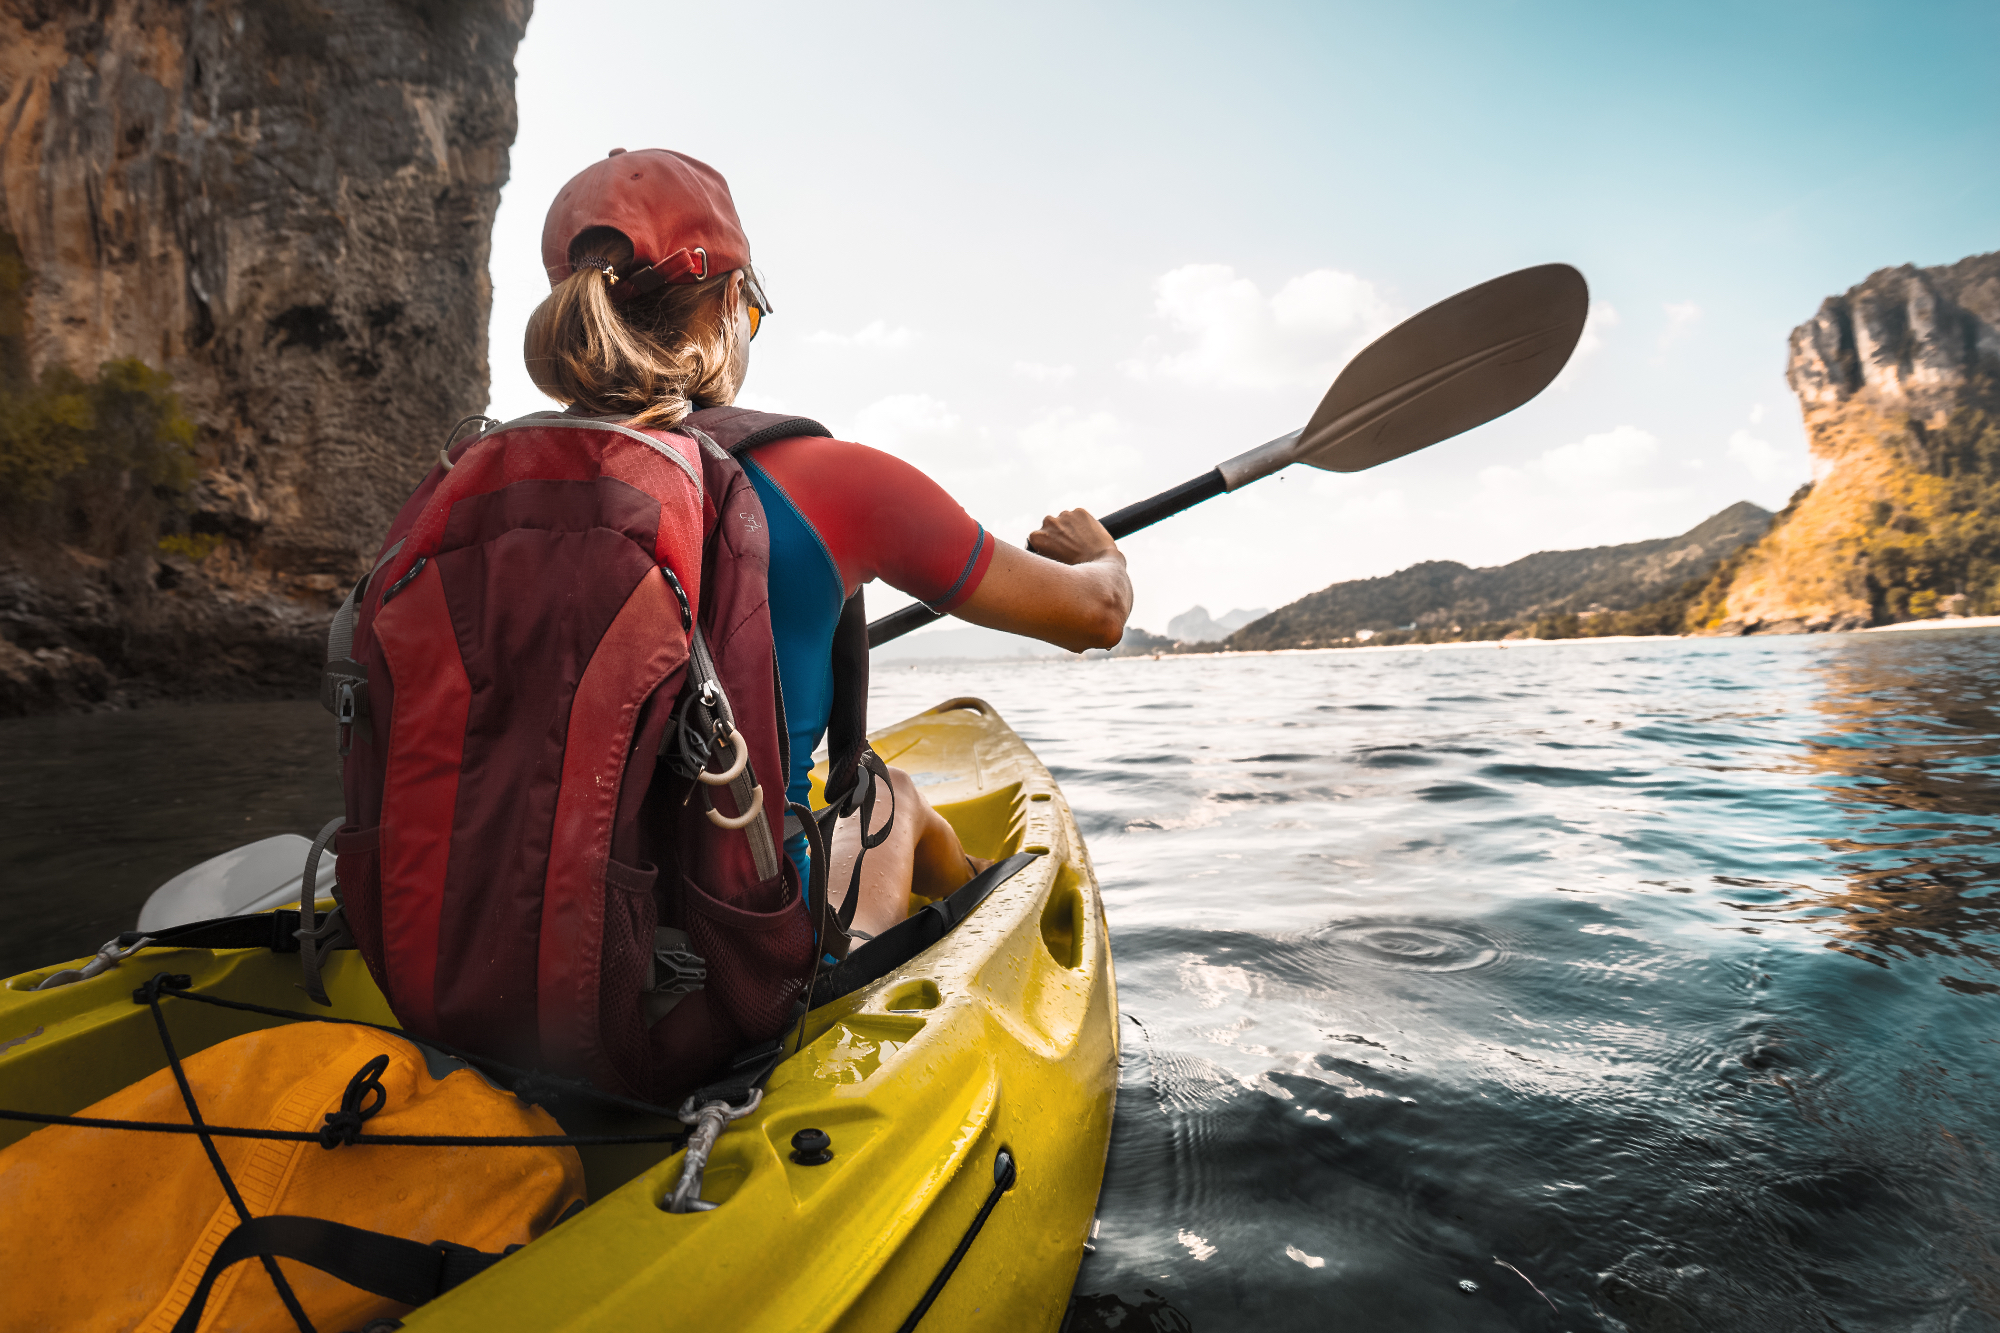 Pantaloni kayak sono essenziali per una navigazione sicura e confortevole